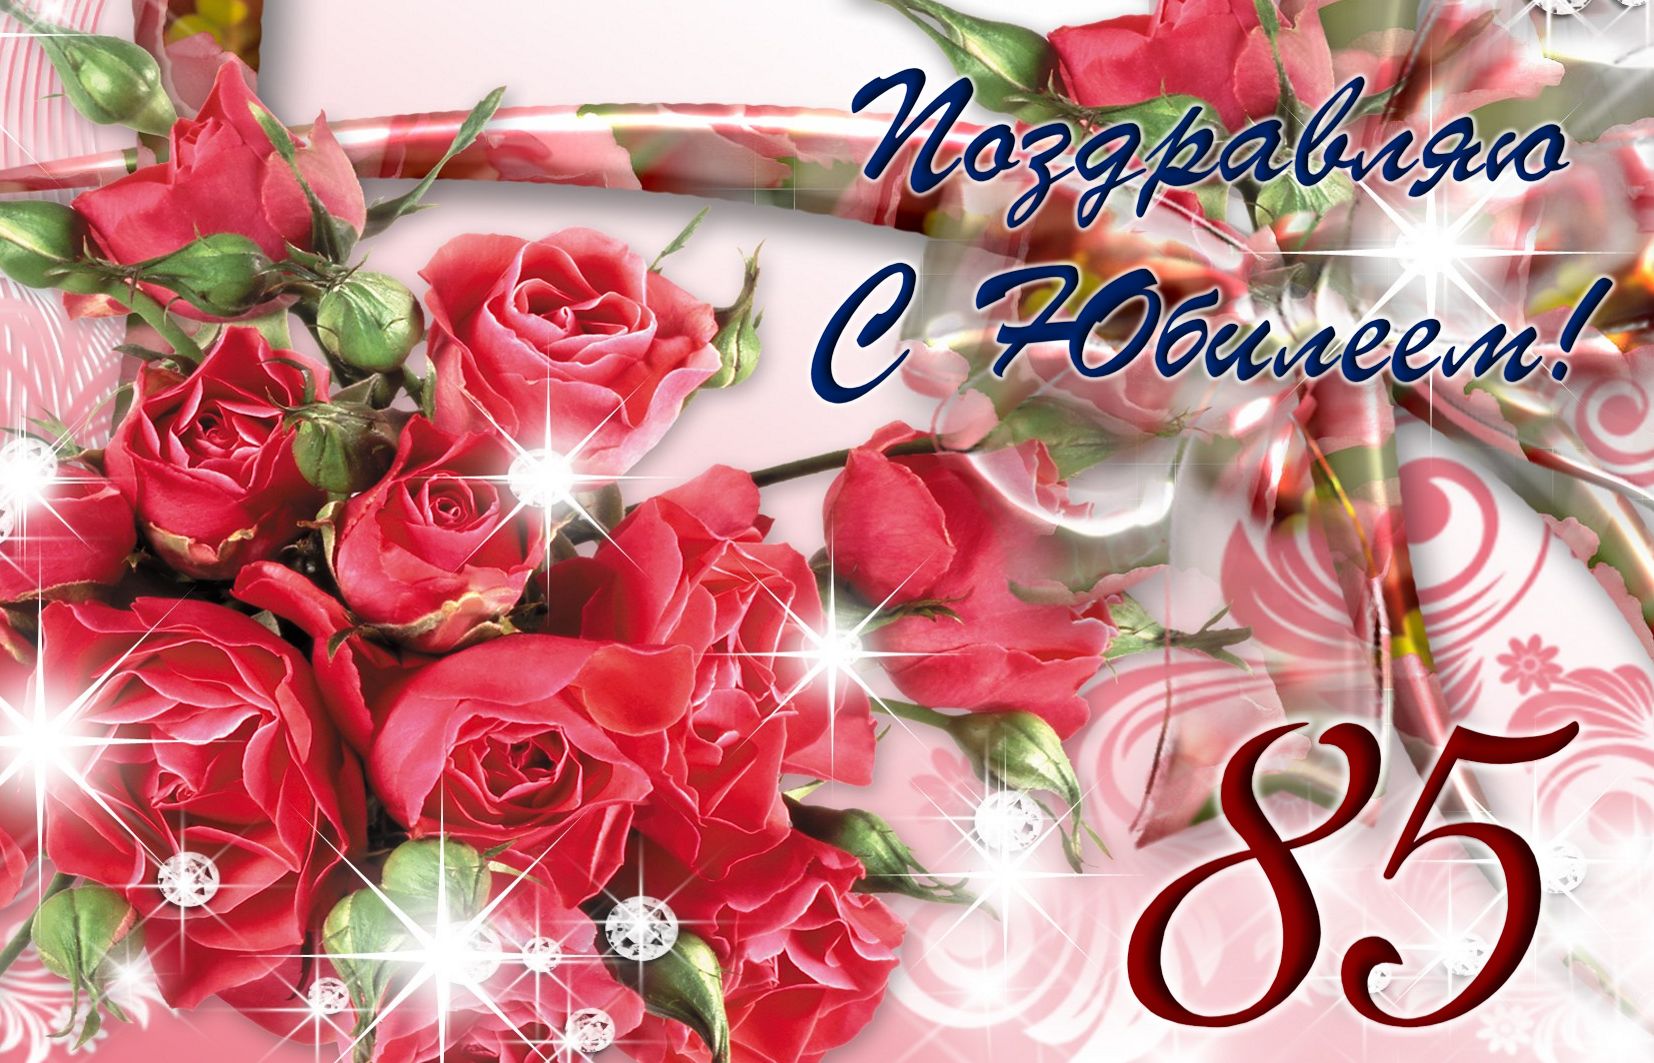 Блестящие розы и поздравление к юбилею. С днём рождения 85 лет!